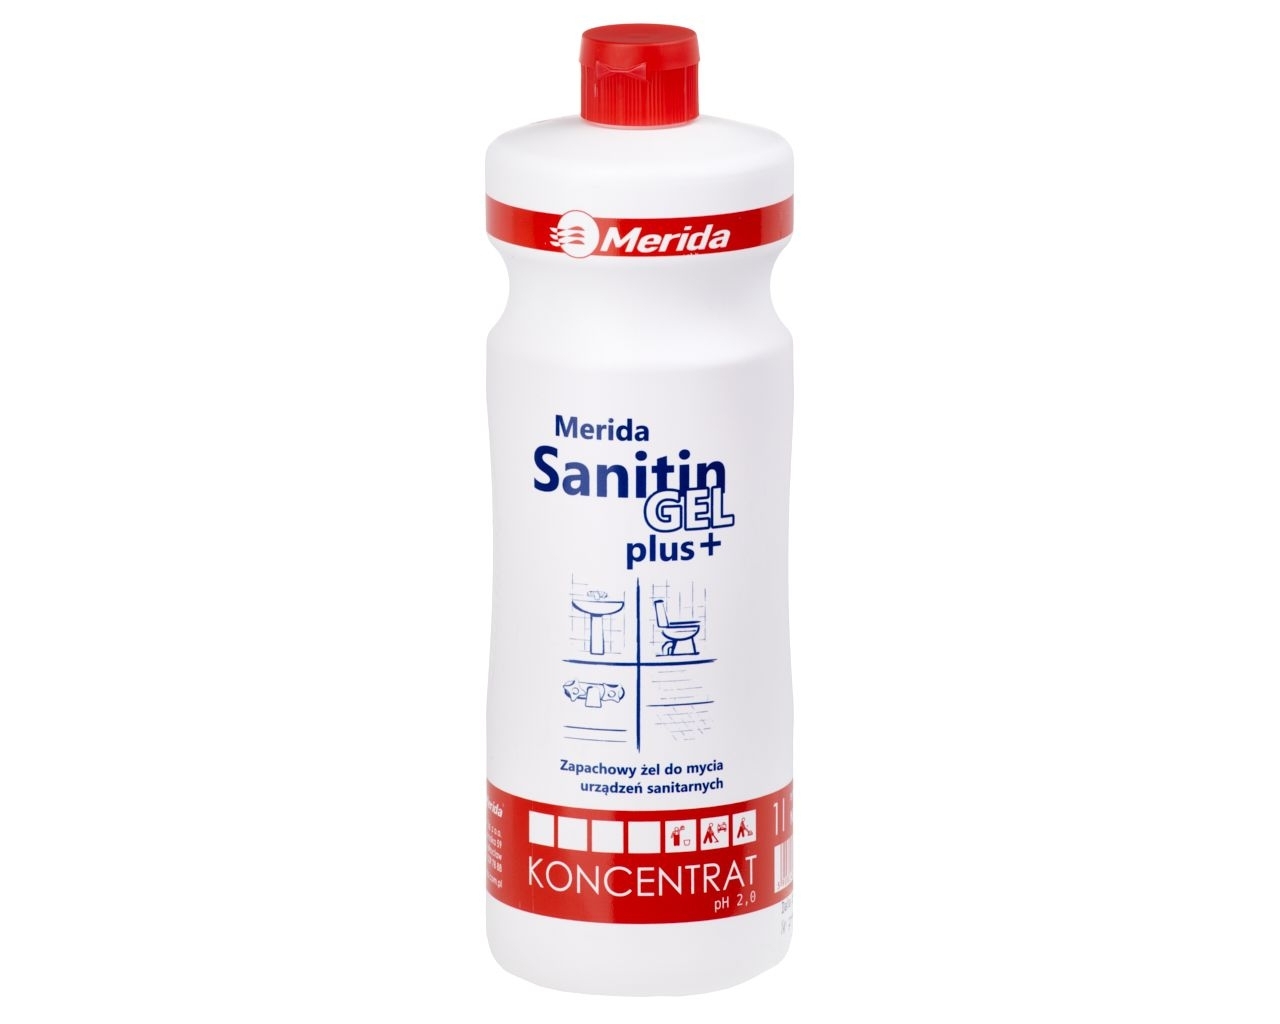 MERIDA SANITIN GEL PLUS+ Kwaśny środek do bieżącej pielęgnacji urządzeń sanitarnych, butelka 1 l